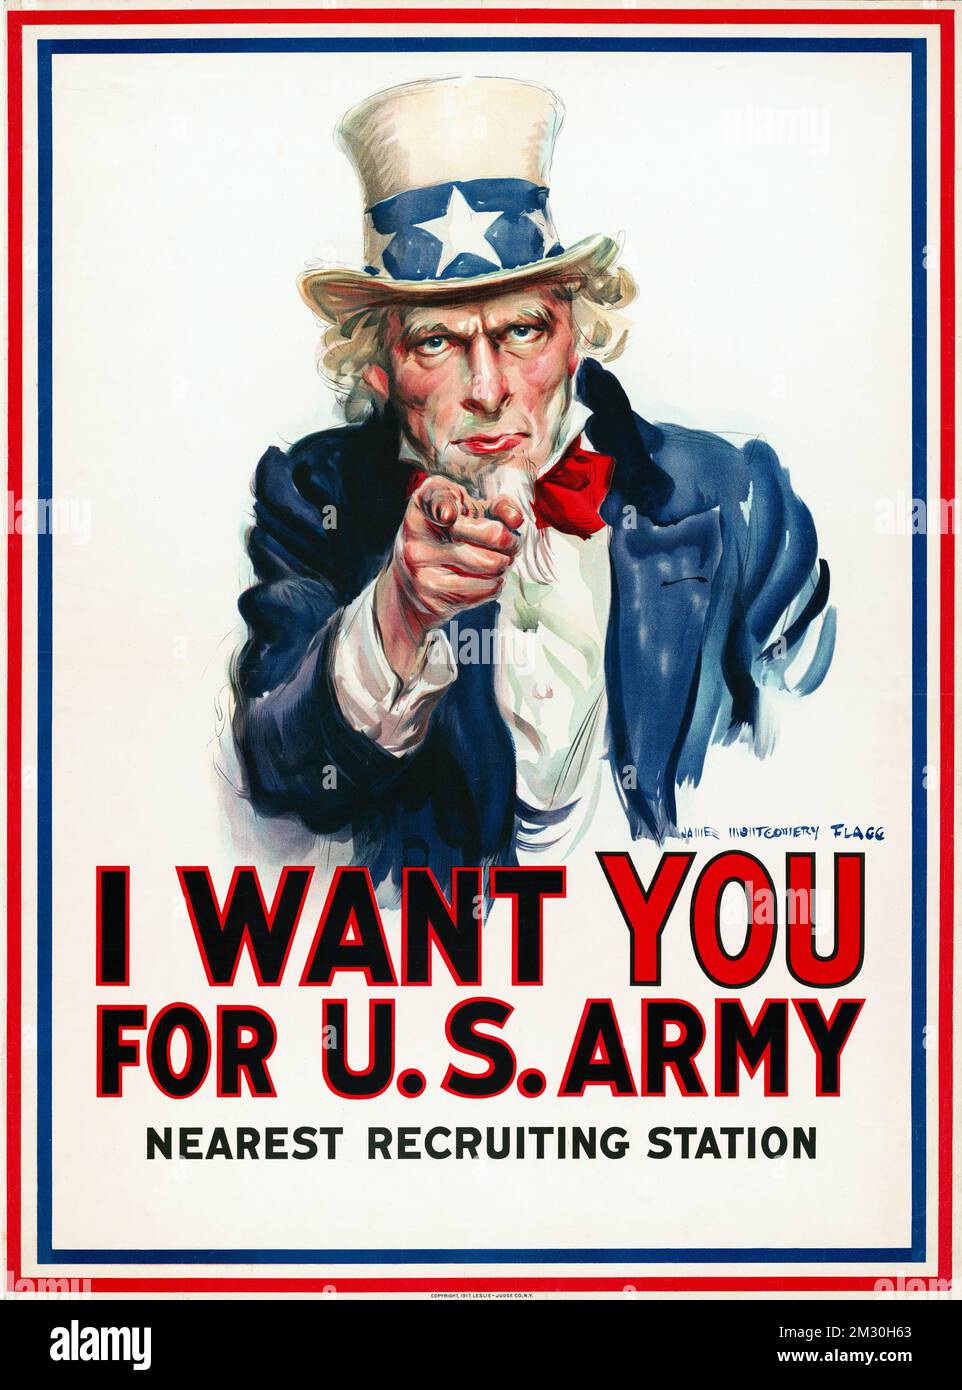 Rekrutierungsplakat - I want you for US Army - Poster zeigt Onkel Sam, wie er in der richtigen Reihenfolge mit dem Finger auf den Zuschauer zeigt Stockfoto